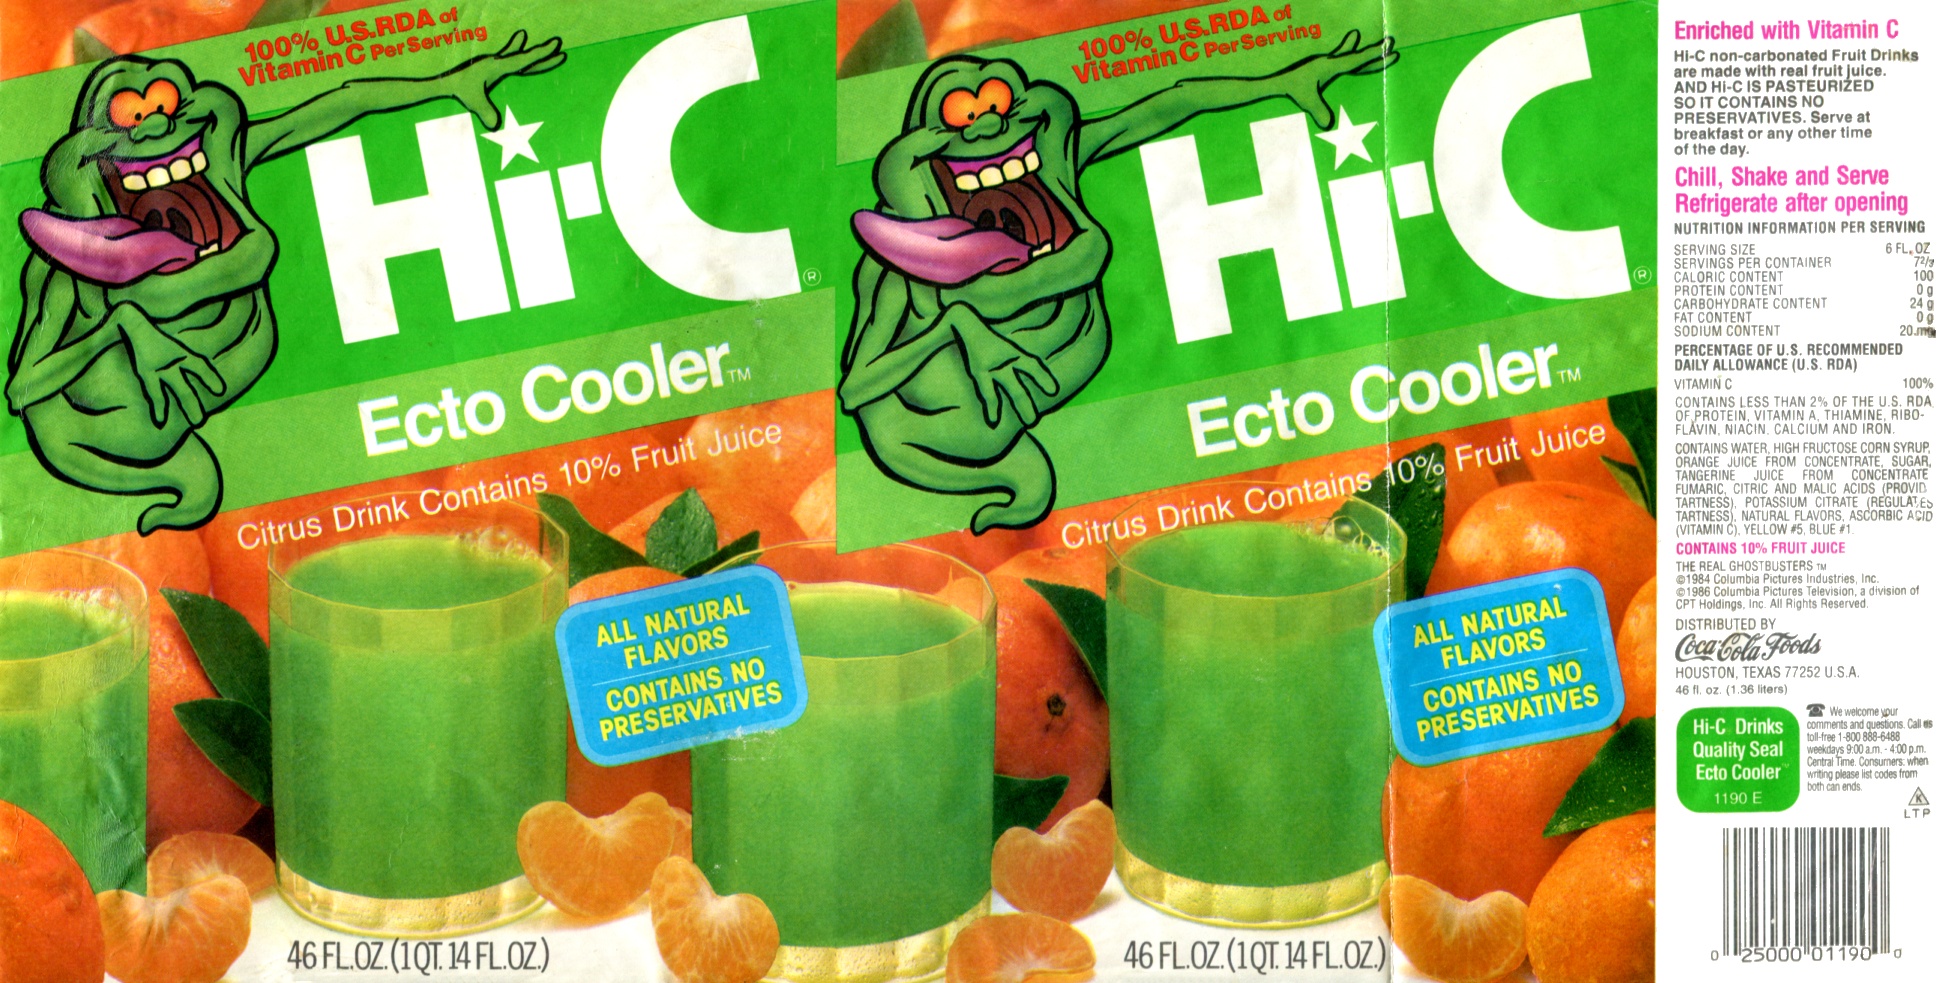 Hi-C_Ecto-Cooler_Can_Label_Original.jpg